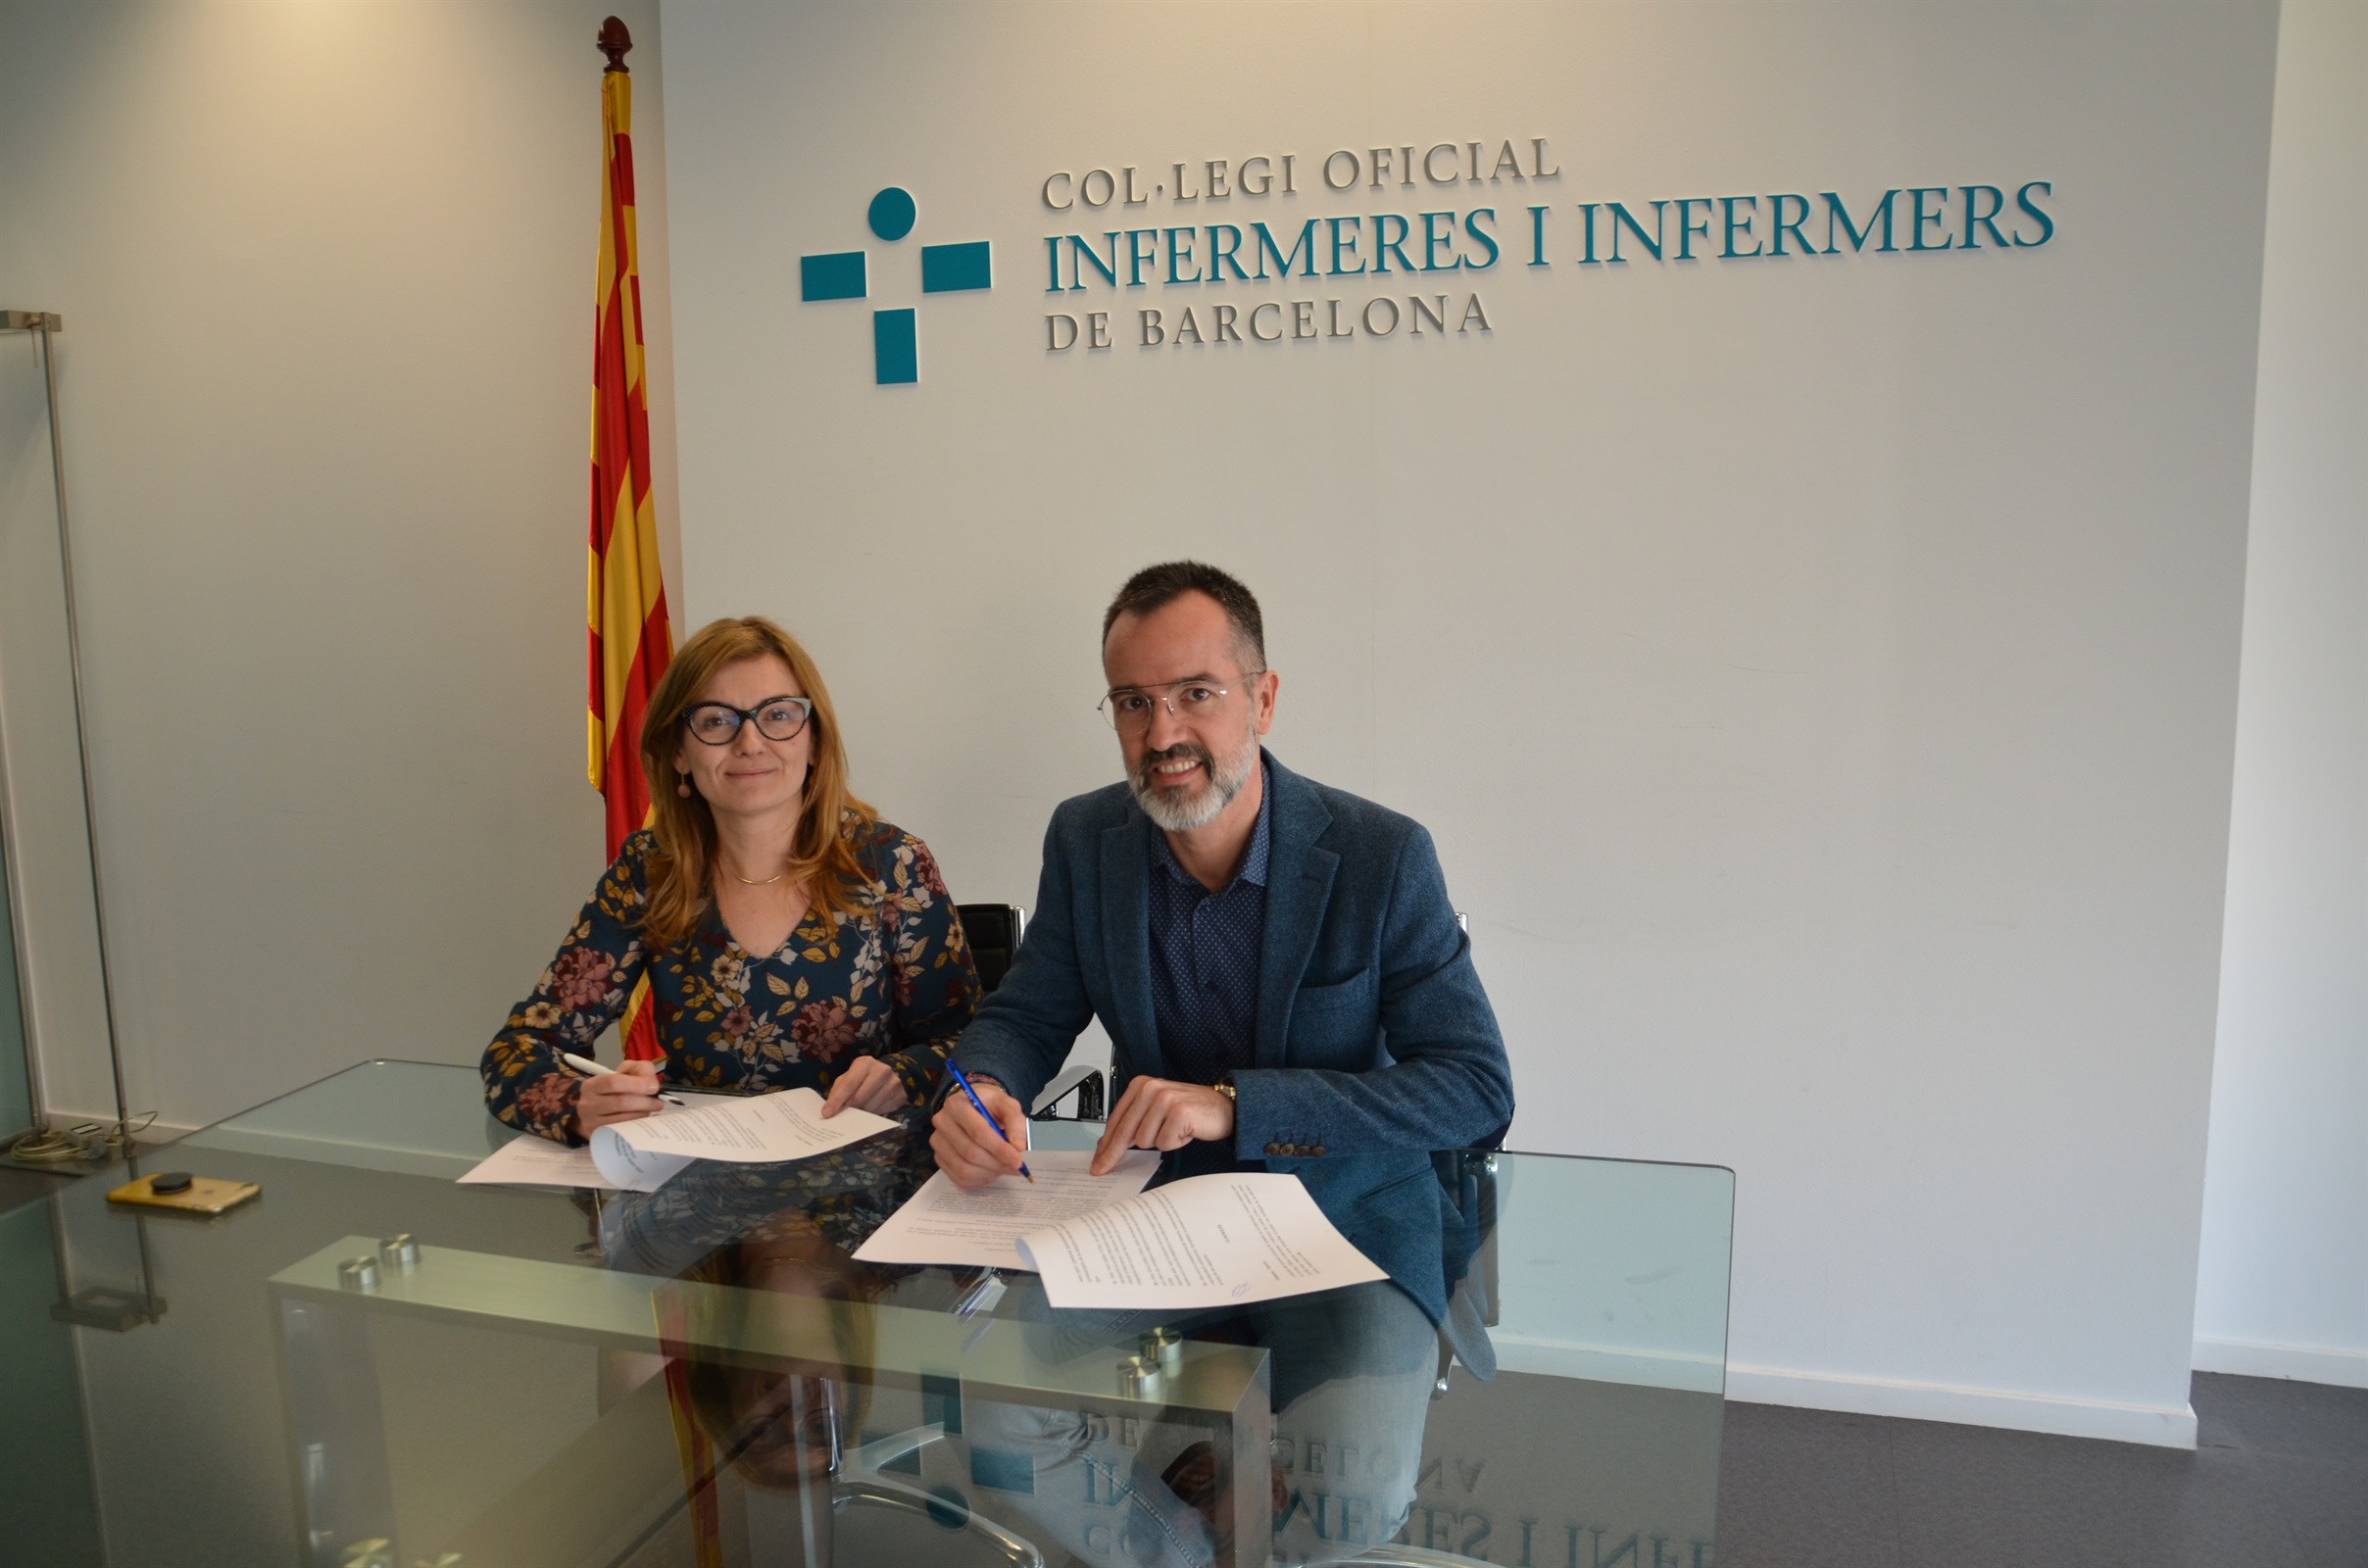 El Col·legi Oficial d’Infermeres i Infermers de Lleida difondrà i promourà Infermera virtual com a eina de promoció de la salut